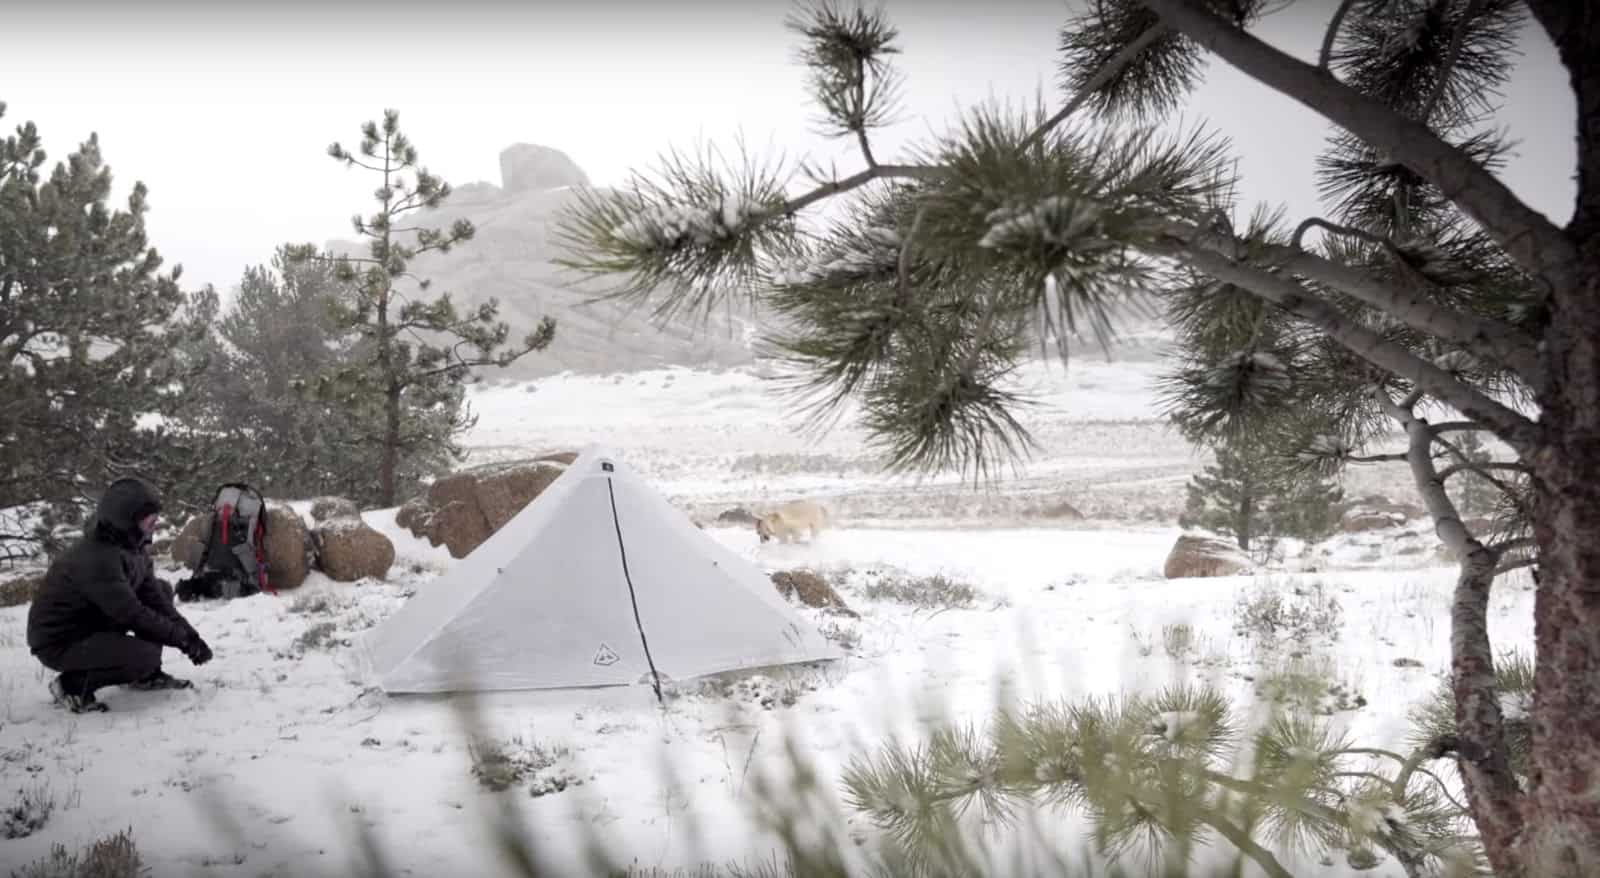 Hyperlite Mountain Gear Dirigo 2 Tent Review - Backpacking Light